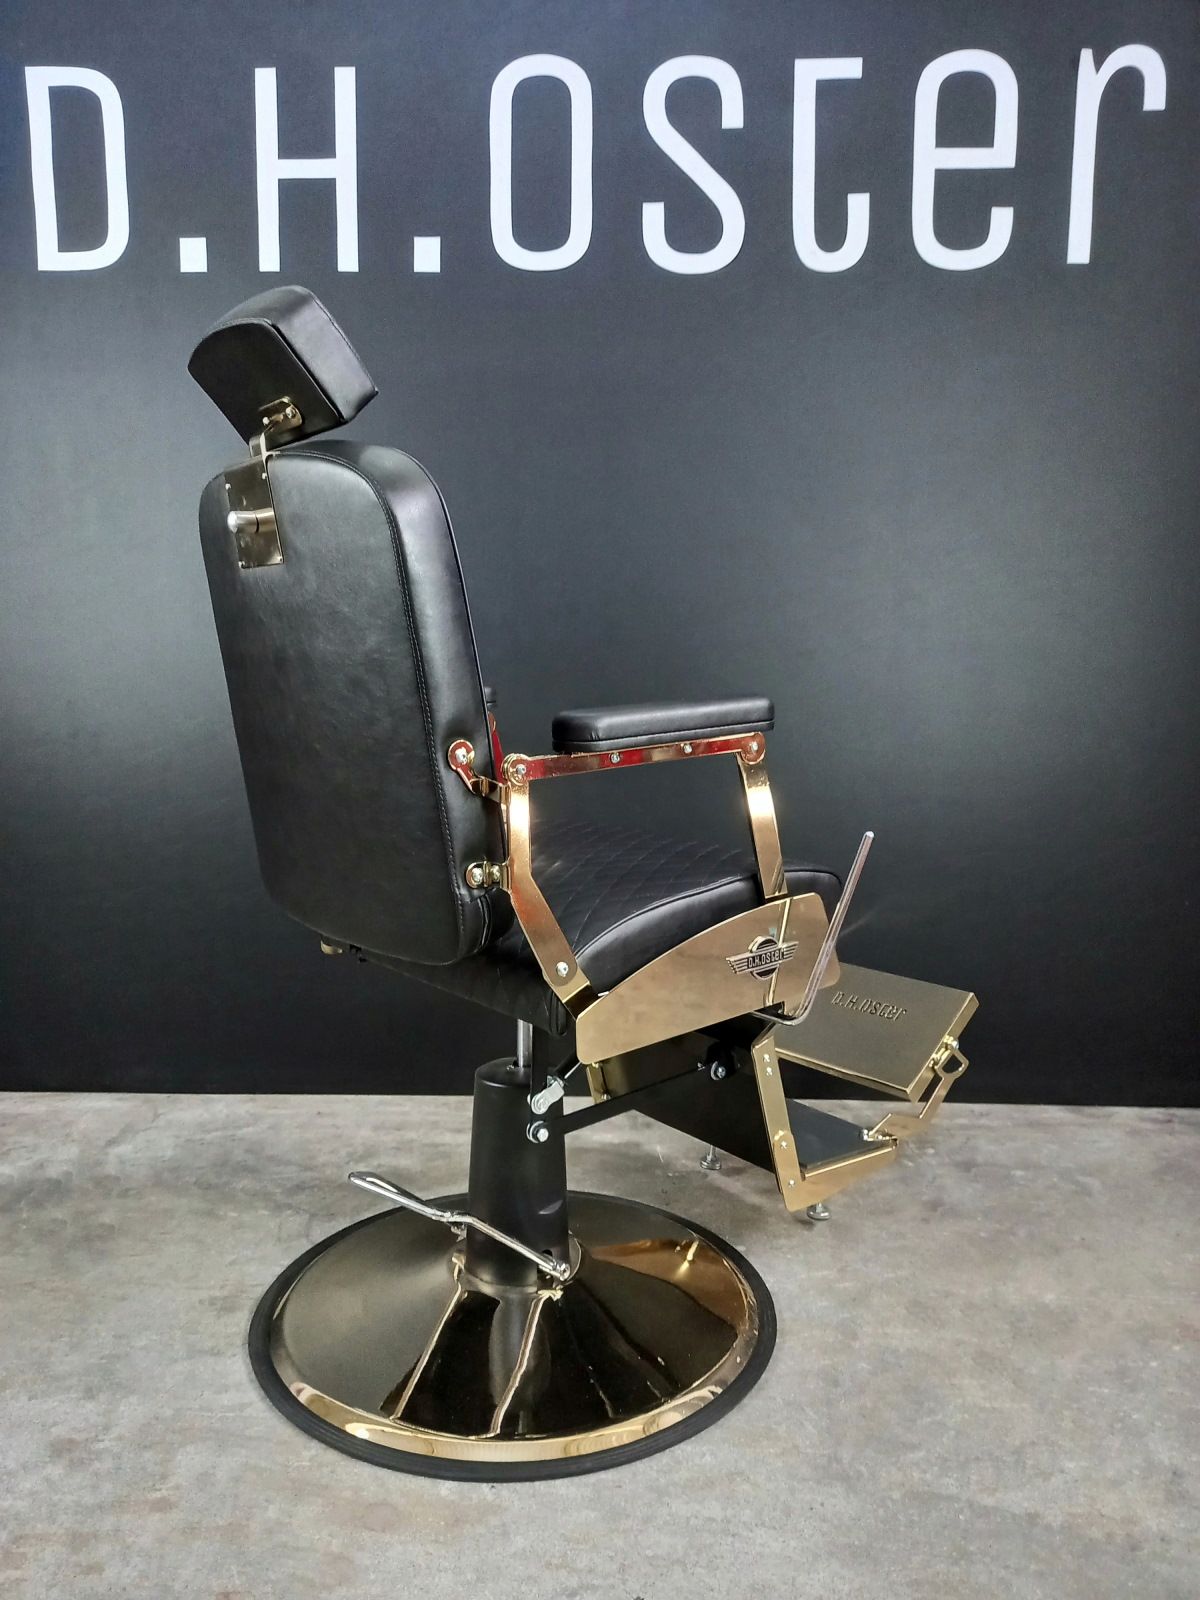 Cadeira de Barbeiro Steel 881  Cadeira de barbeiro, Cadeiras de